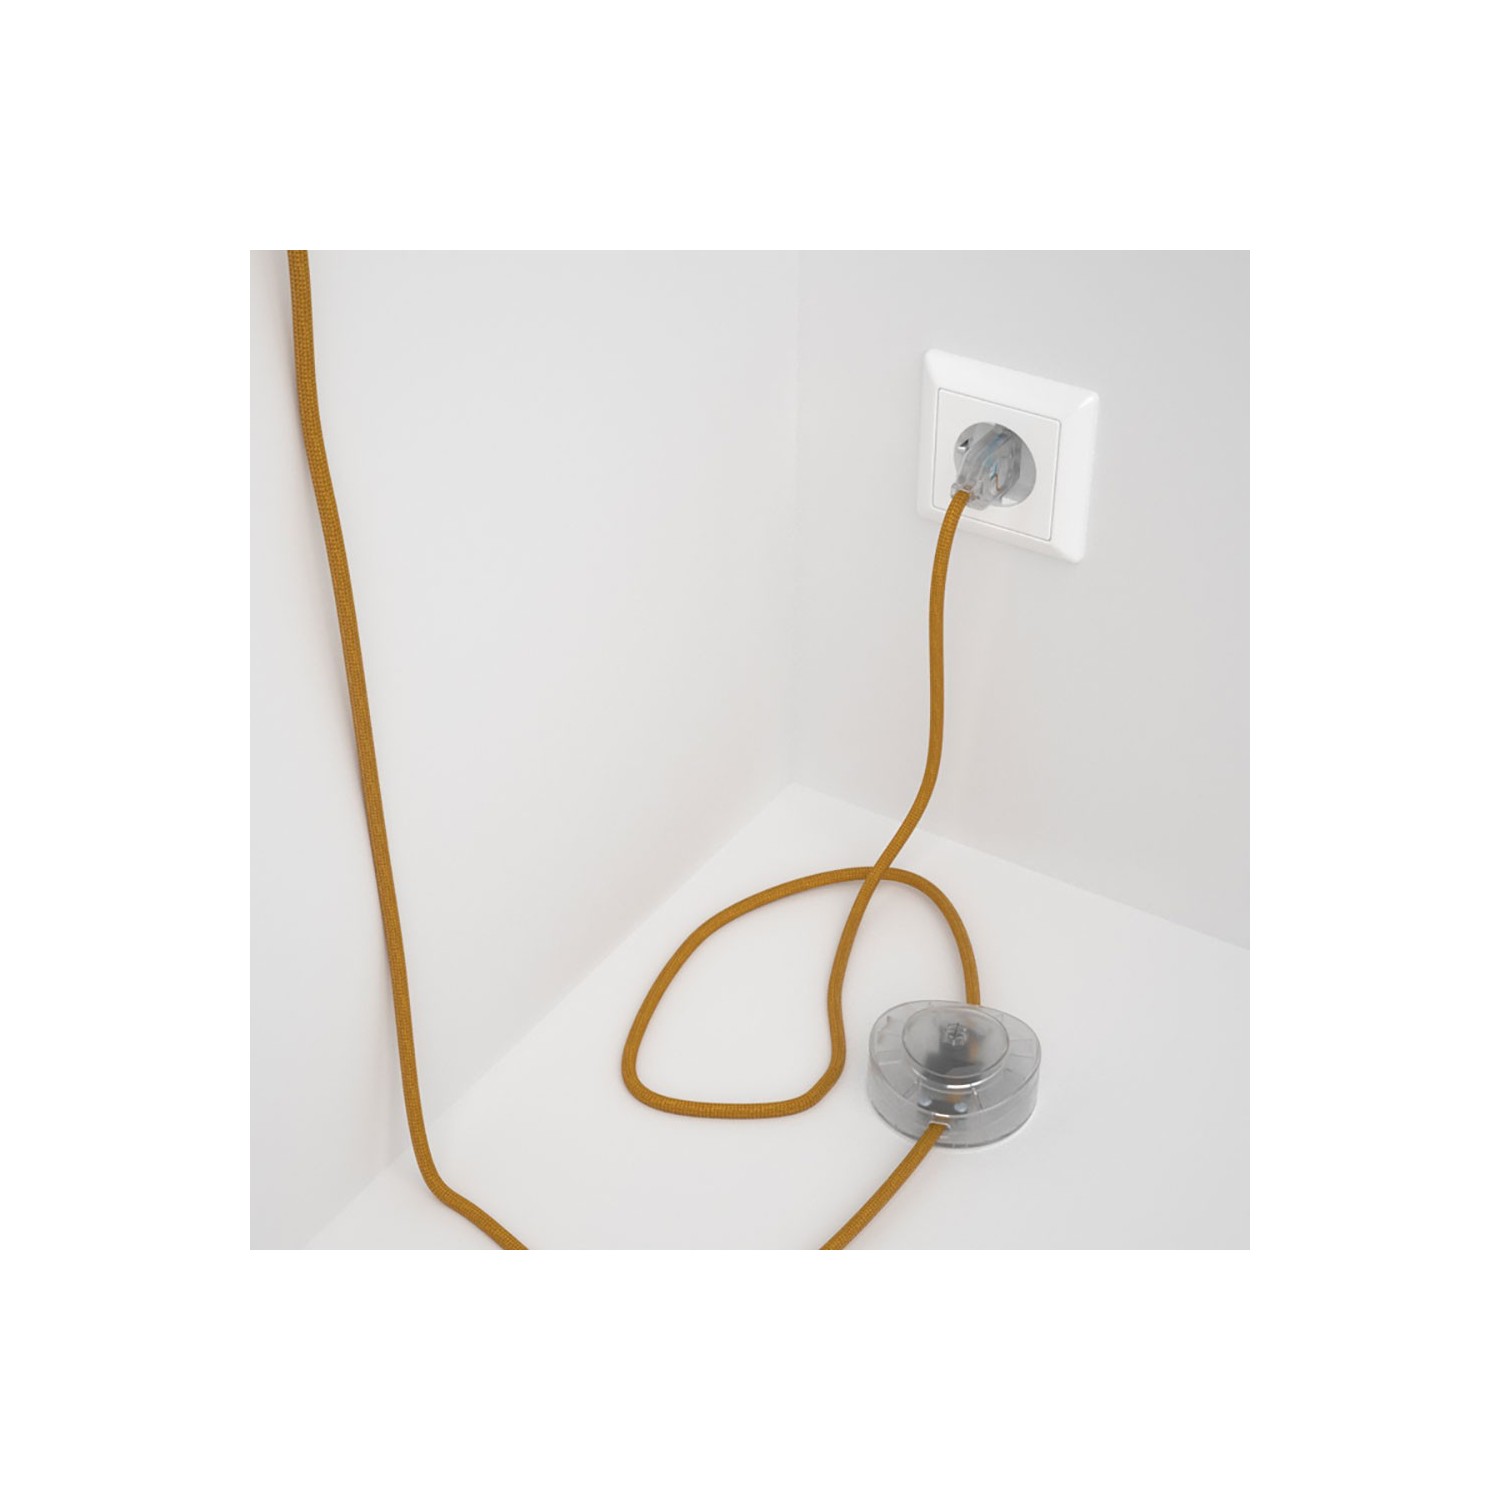 Sladdställ med fotströmbrytare, RM05 Guld Viskos 3 m. Välj färg på strömbrytare och kontakt